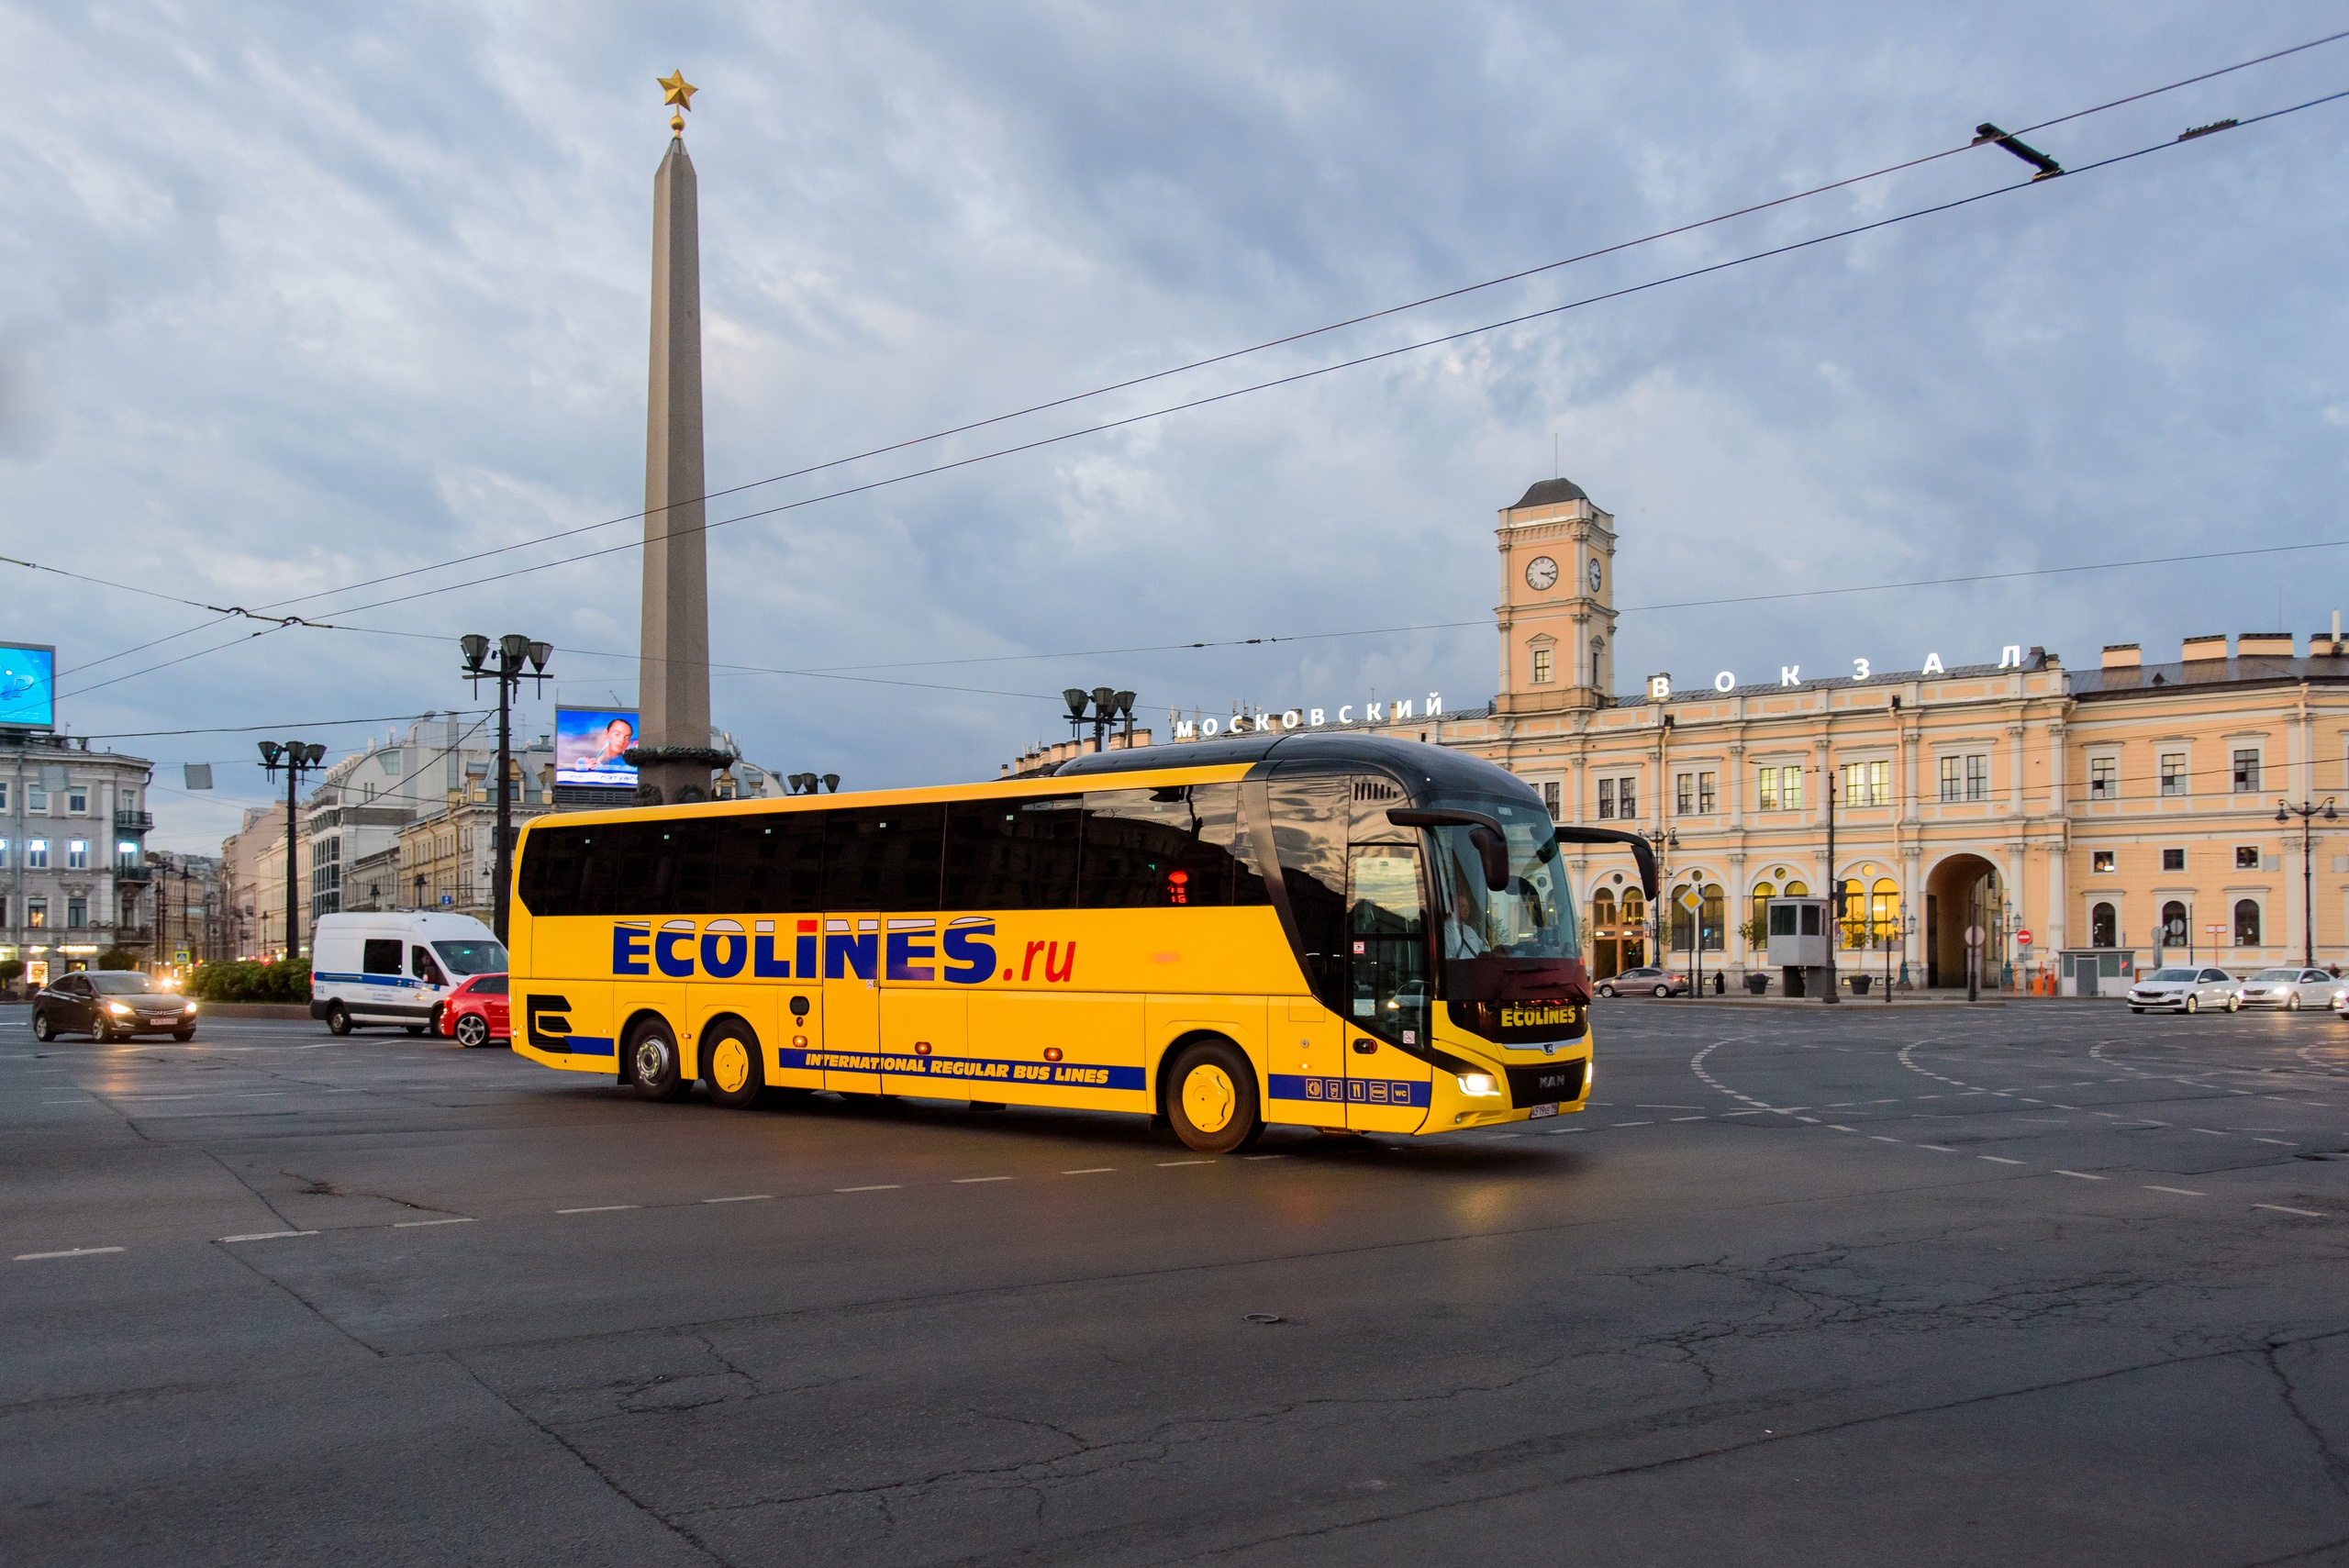 Автобусы в хельсинки. Автобус Эколайн Санкт-Петербург Хельсинки. Автобус Ecolines Хельсинки Санкт-Петербург. Lux Express автобусы Санкт-Петербург Хельсинки. Автобус СПБ Хельсинки Эколайн.